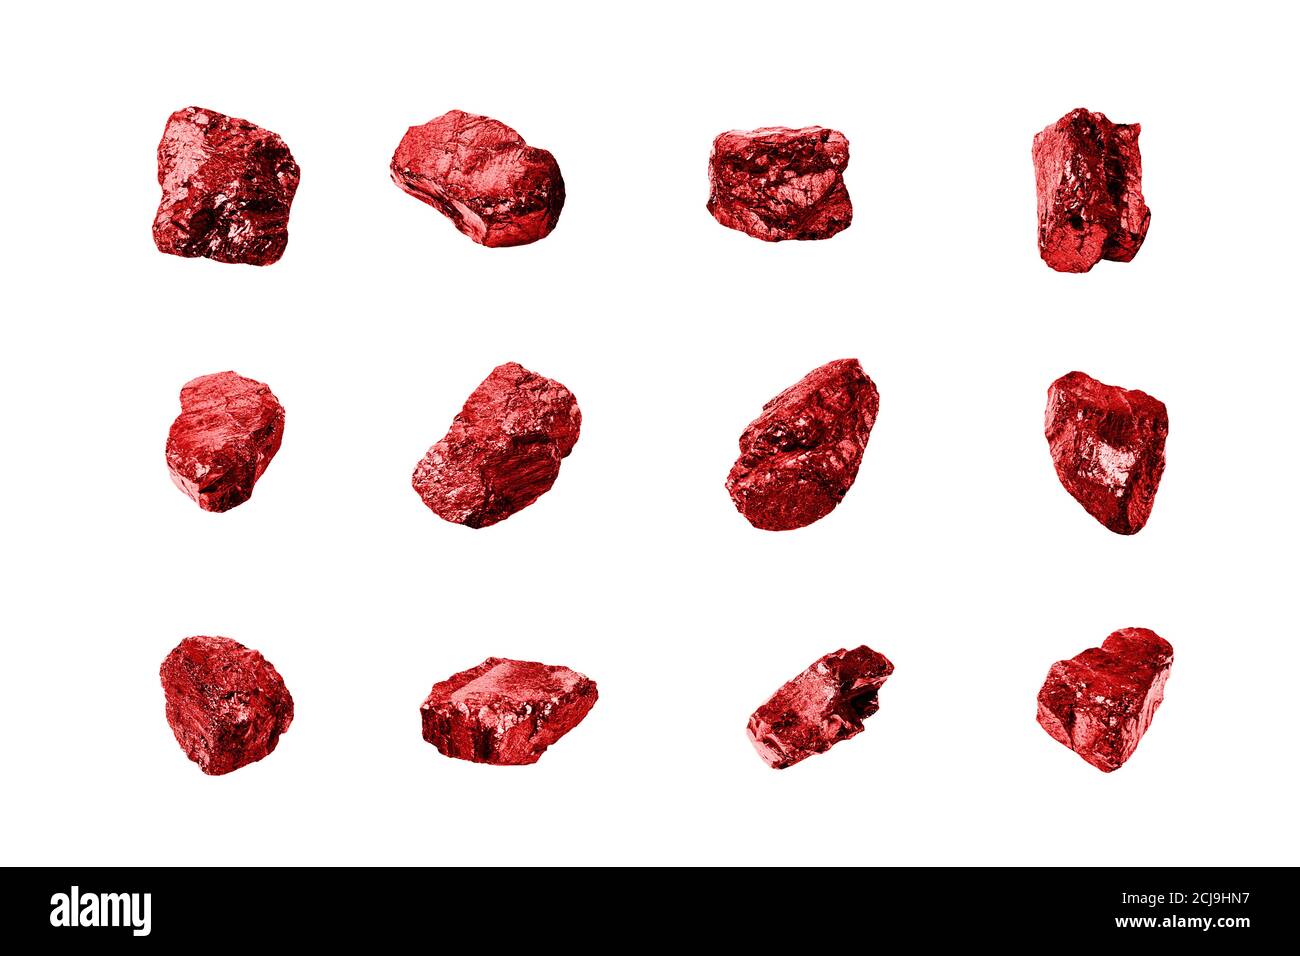 Rote Edelsteine weißer Hintergrund isolierte Nahaufnahme, Rubin Edelstein Set, roh glänzende Granatsammlung, grobe natürliche Felsen Nuggets Textur, Mineral, Juwel Stockfoto